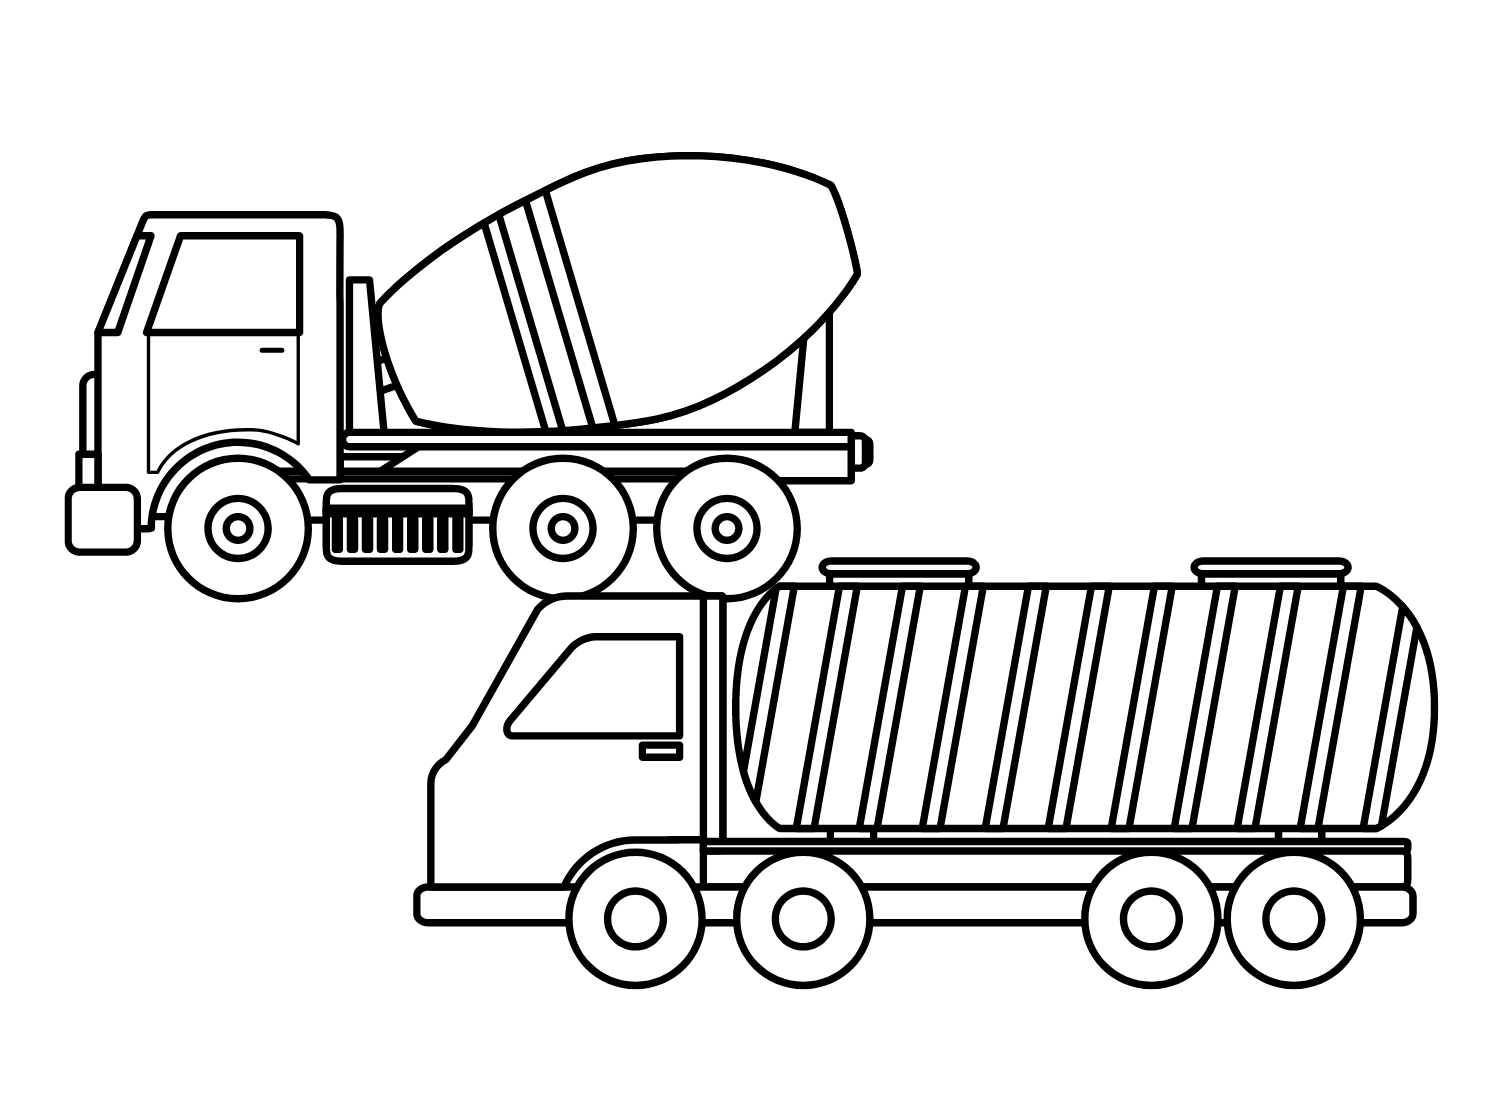 Betonwagen met tankwagen van Tankwagen